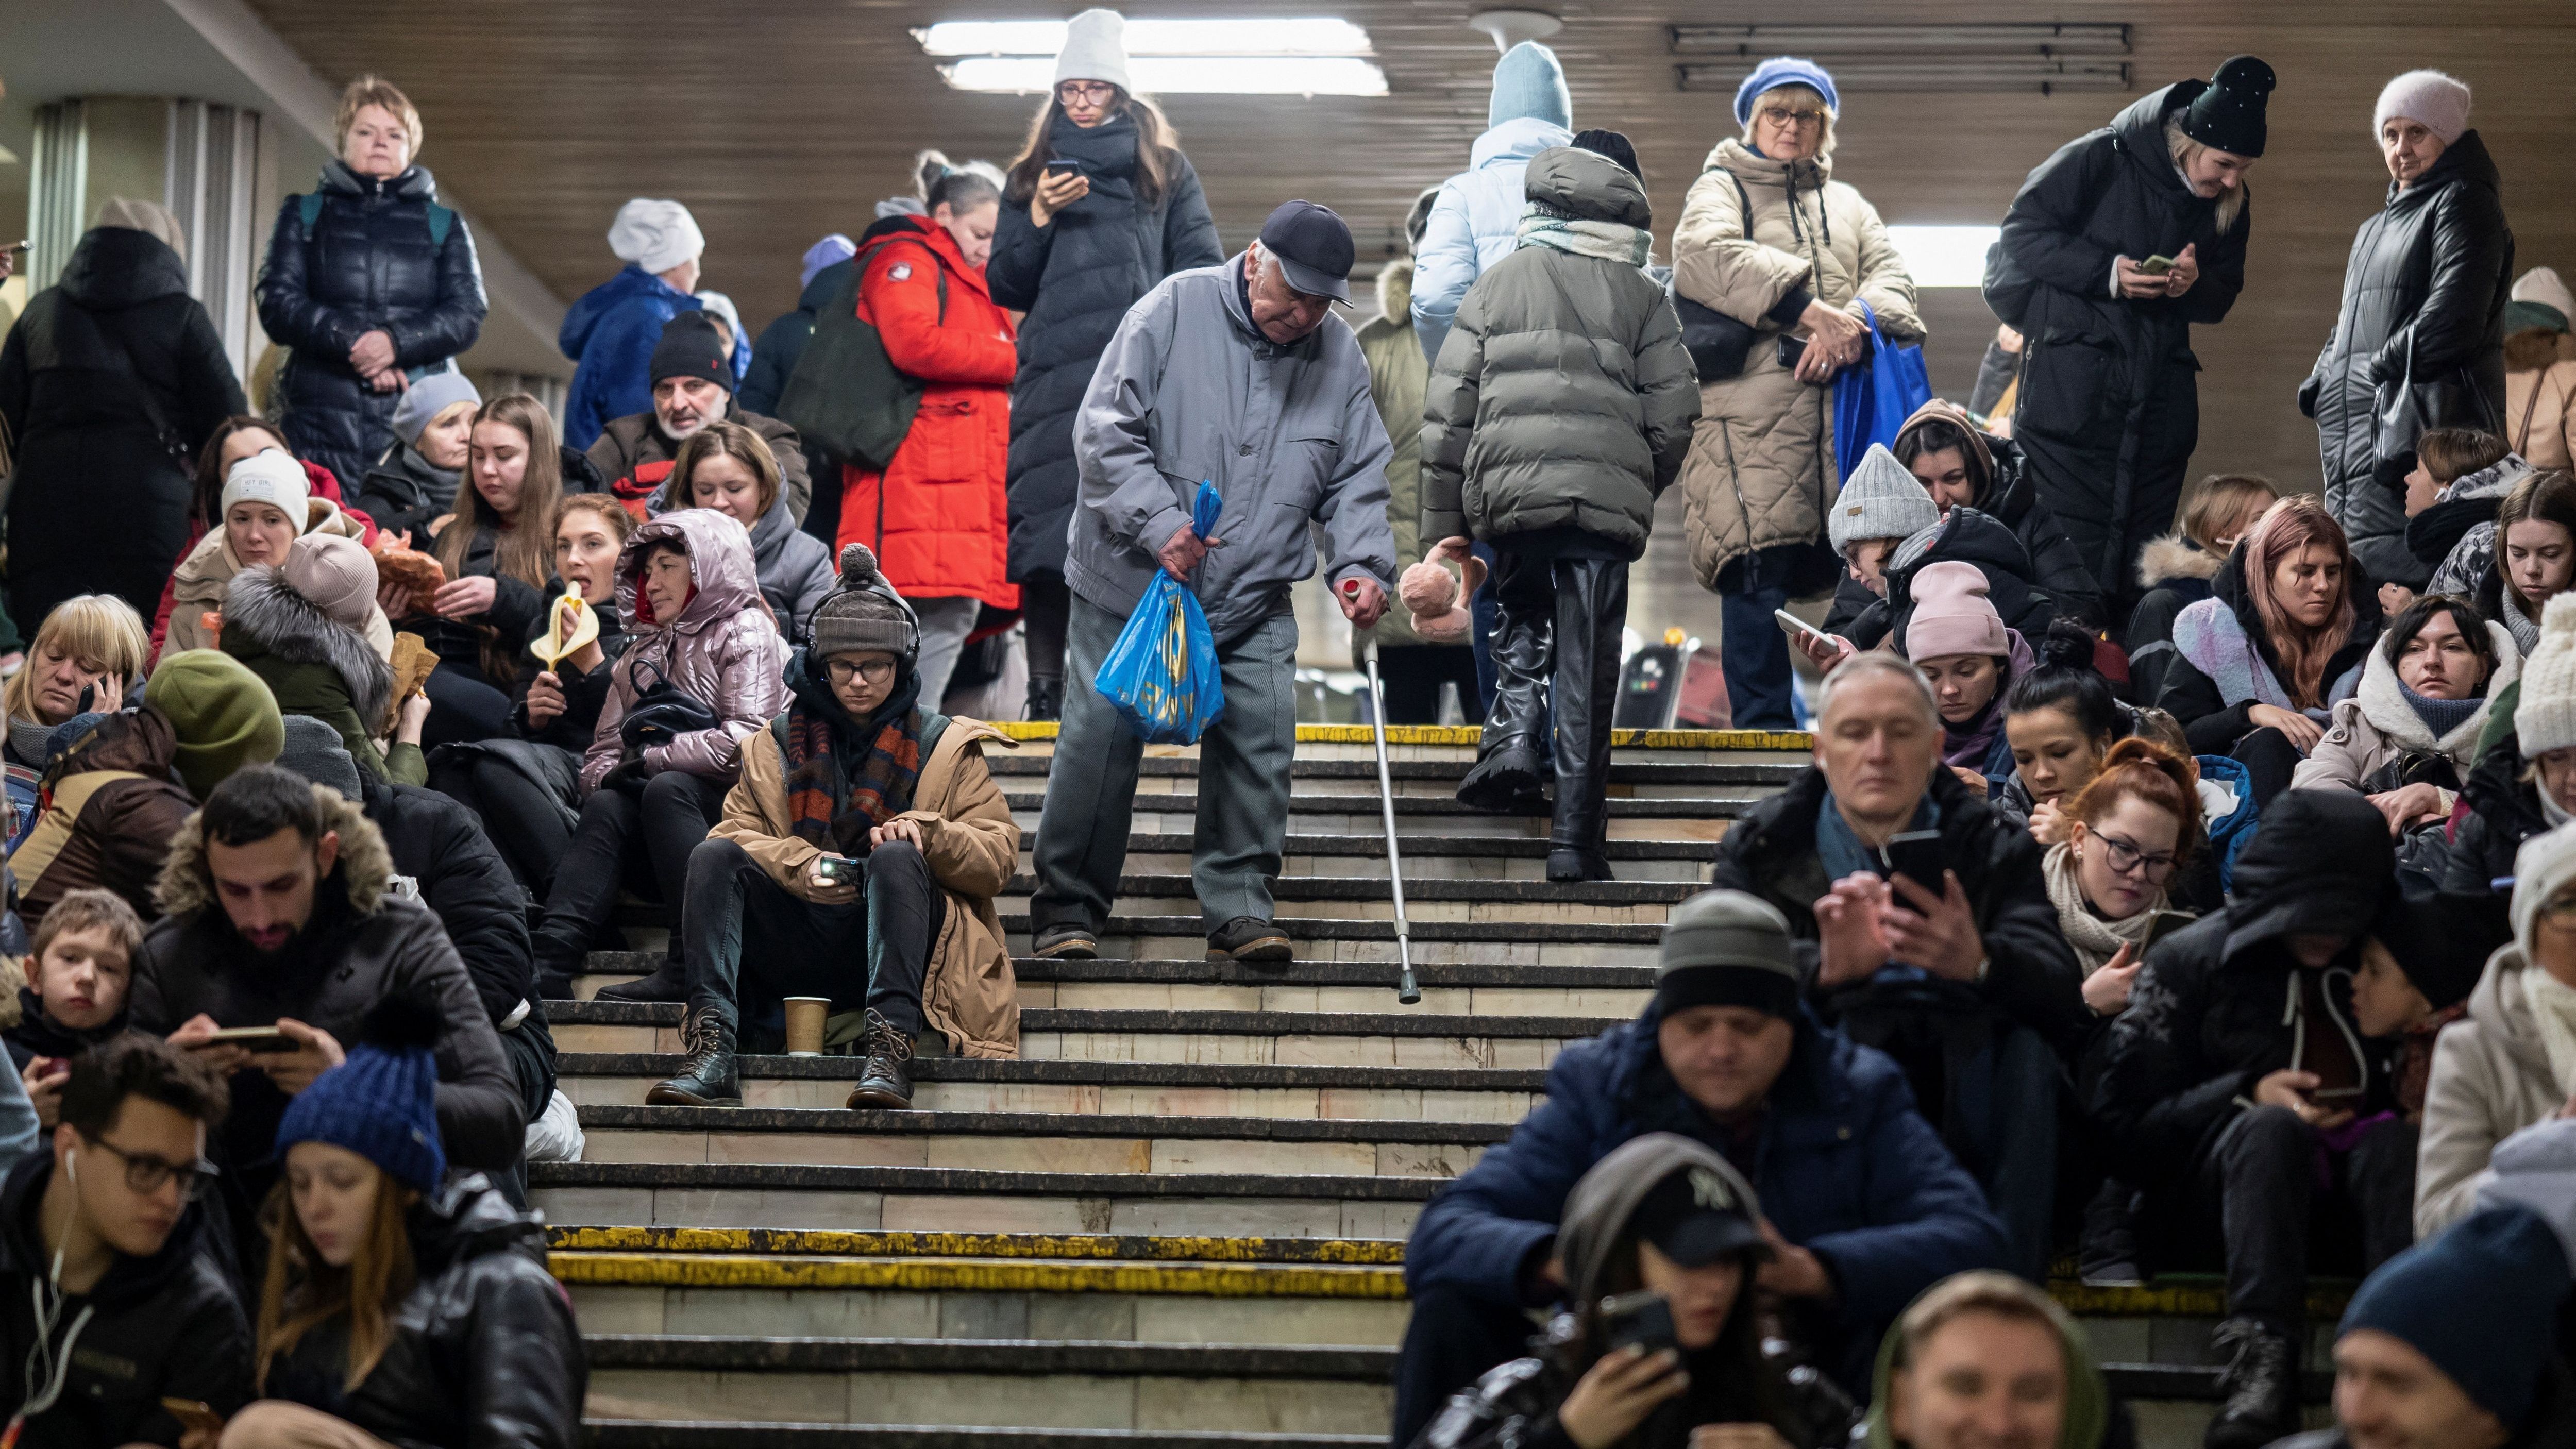 Dezember 2022: Für die Bevölkerung in der Hauptstadt Kiew werden die U-Bahnhöfe zu einem wichtigen Schutzraum vor den russischen Luftangriffen - Menschen lebten dort für mehrere Wochen.